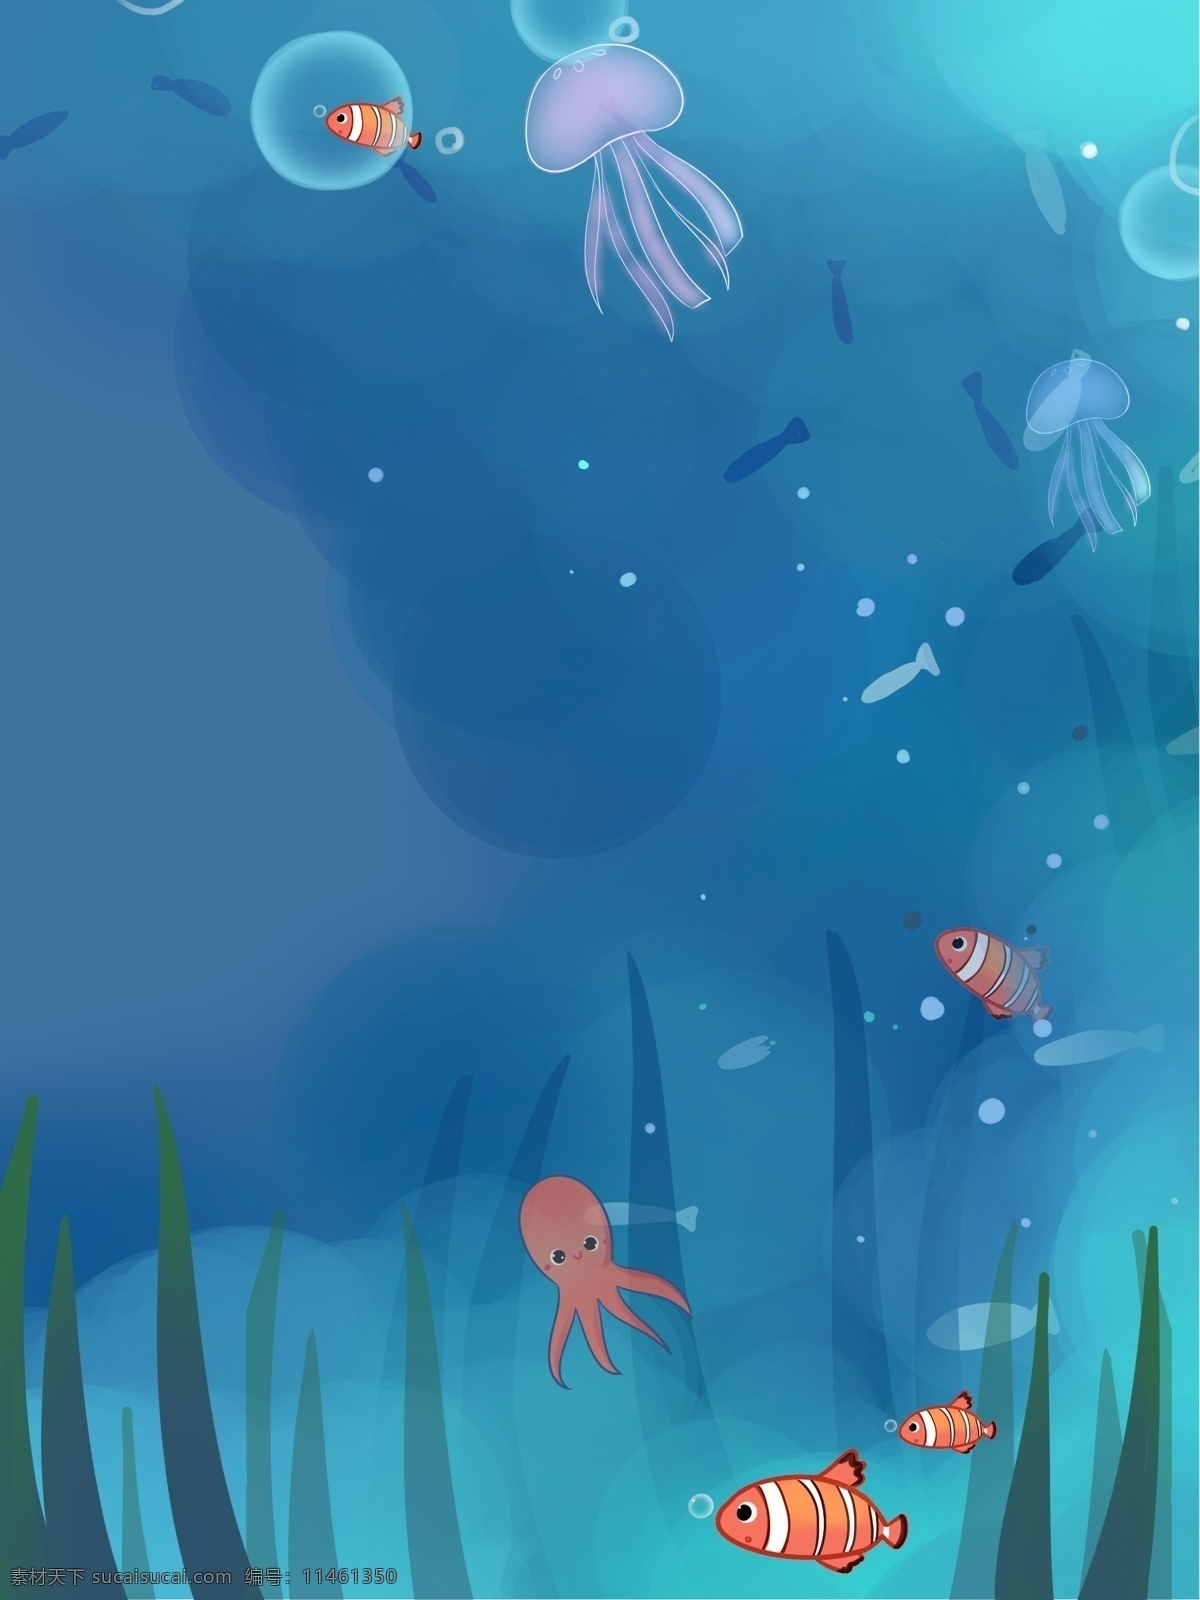 手绘 海洋 水母 背景 海底世界 大海 海洋生物 鱼 彩绘背景 手绘背景 通用背景 背景展板图 背景图